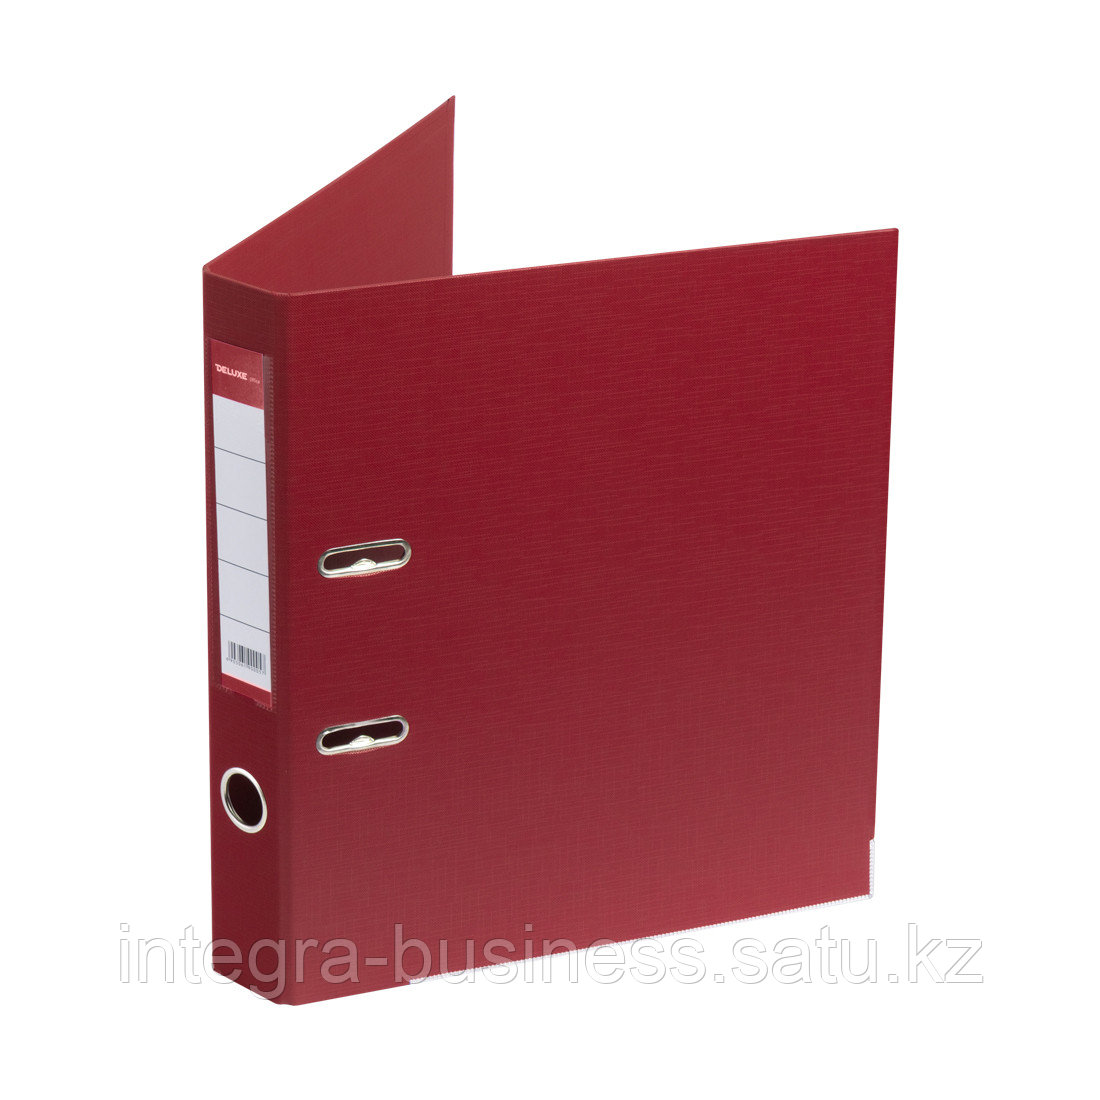 Папка-регистратор Deluxe с арочным механизмом, Office 2-RD24 (2" RED), А4, 50 мм, красный, фото 1